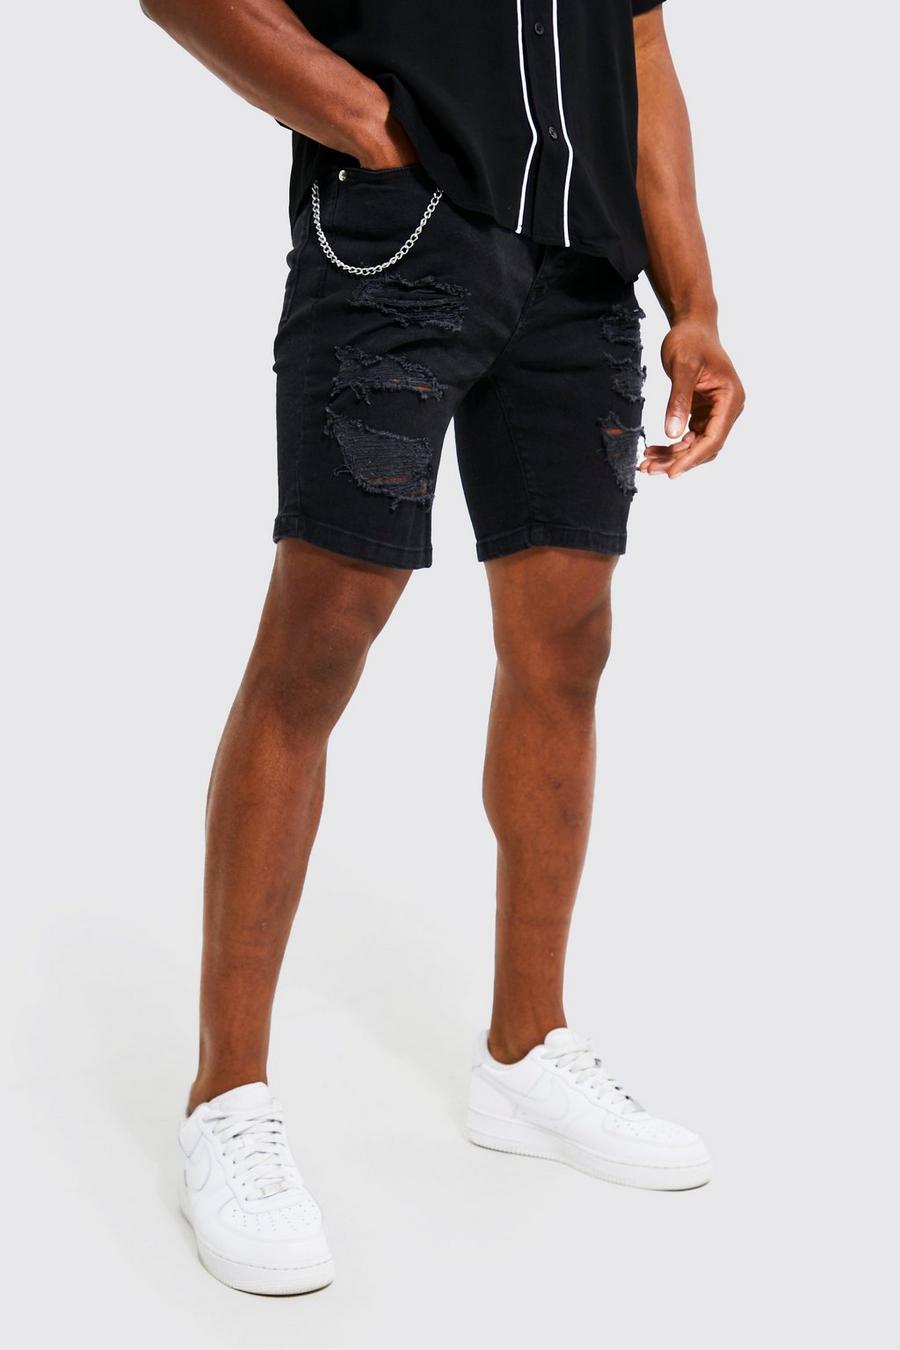 שחור דהוי שורט סקיני מבד ג'ינס עם קרעים ושרשרת